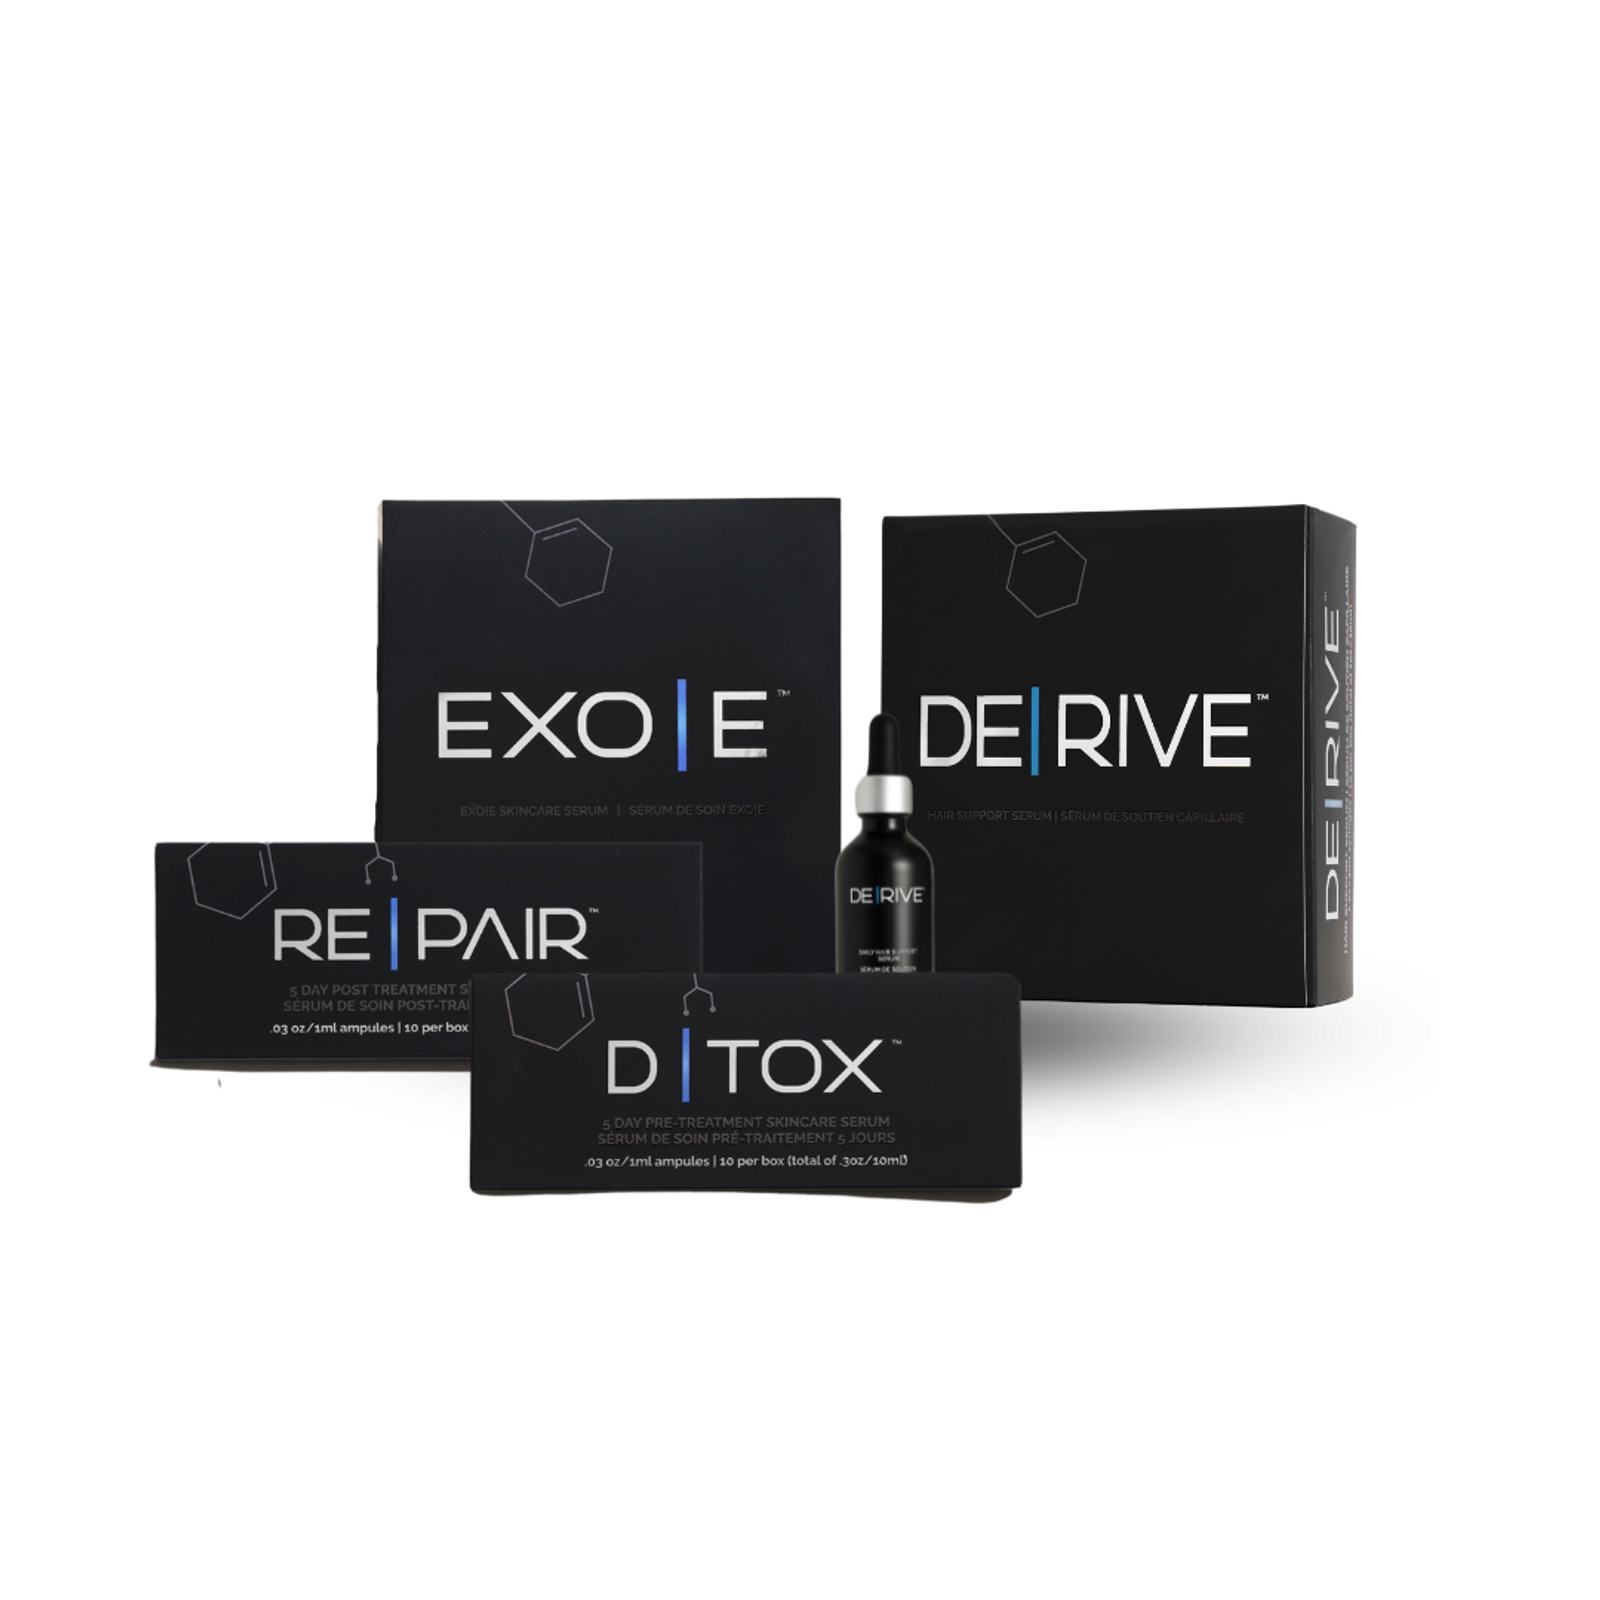 EXO|E Skin Revitalizing Complex & DE|RIVE Hair Support Serum Combo Starter Kit